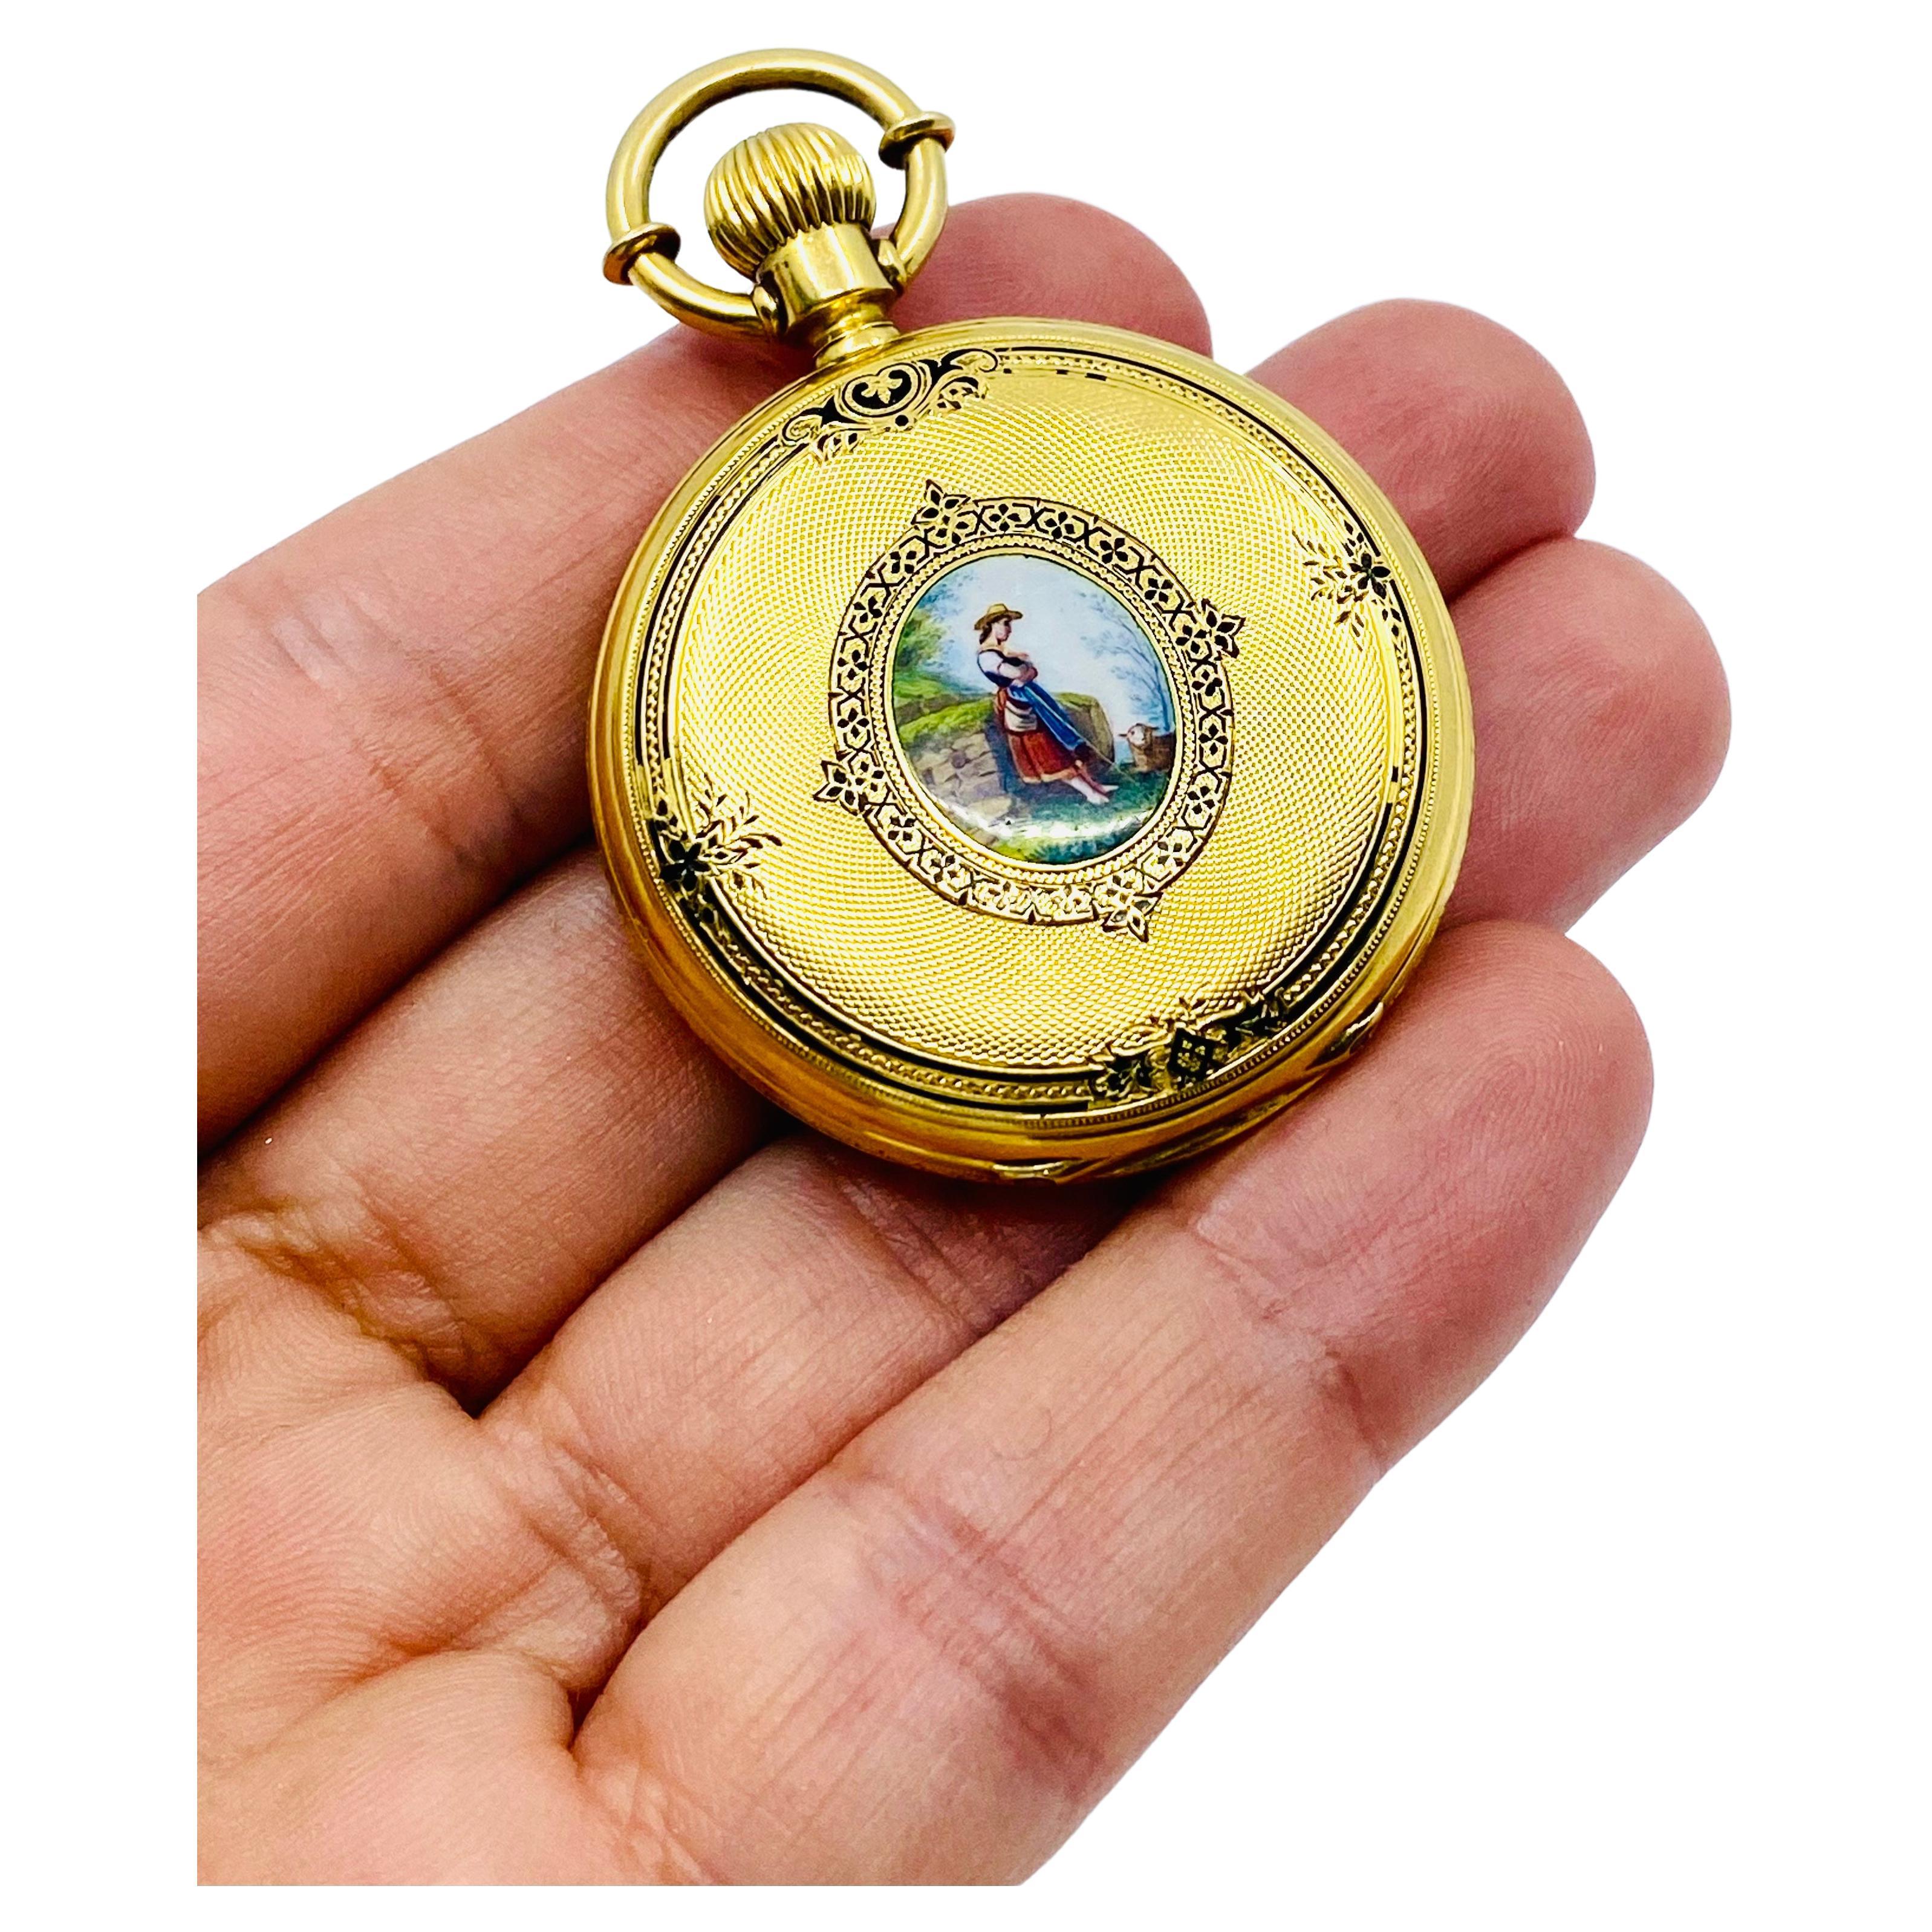 
Une étonnante montre de poche ancienne Breitling Laederich, datant de la fin des années 1800. La montre est en or 18 carats et comporte des émaux.
La montre est logée dans un magnifique boîtier de chasseur décoré de deux miniatures en émail. Une